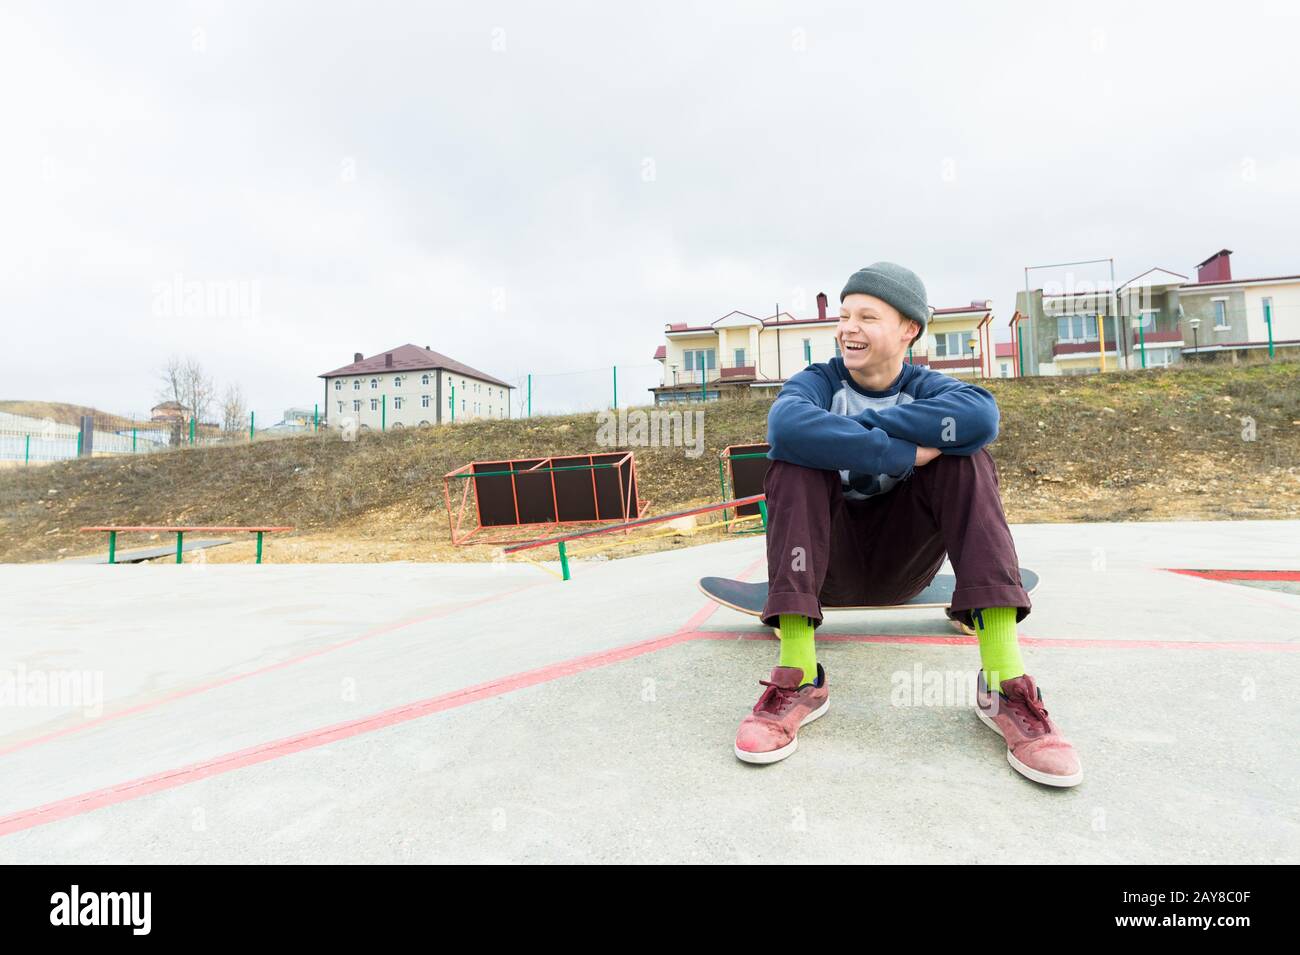 Un adolescent est assis sur un skateboard dans le parc et souriant. Le concept de temps libre passe pour les adolescents dans la ville Banque D'Images